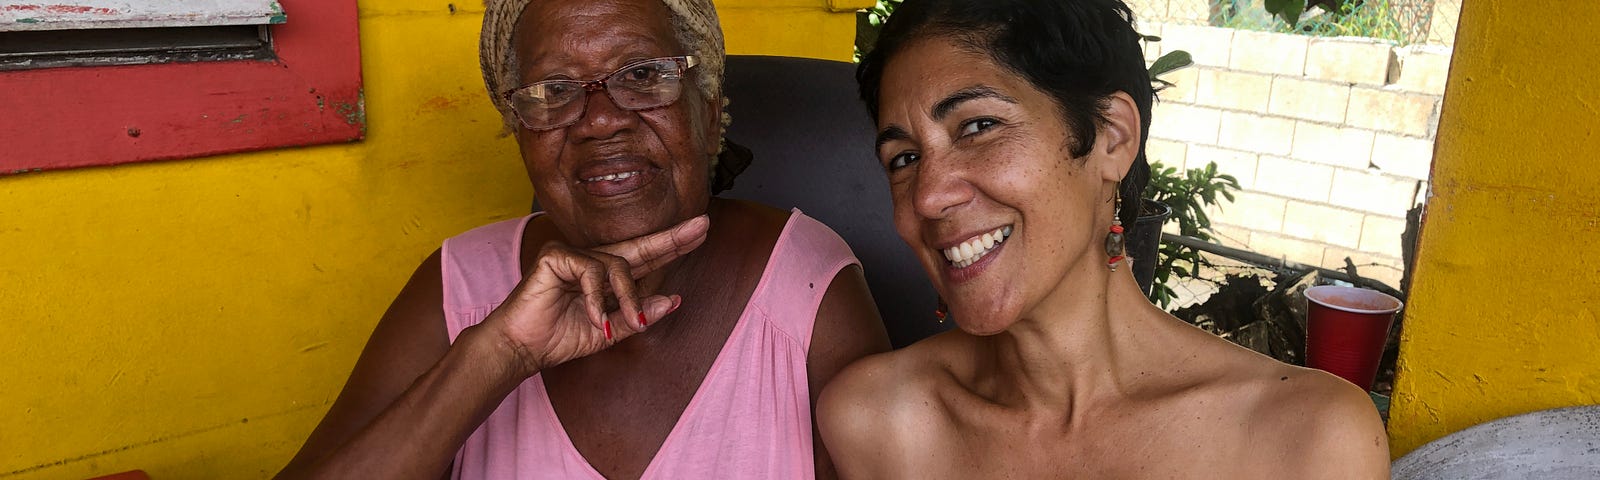 Loíza, Puerto Rico, Puerto Rican Bomba Icon Raquel Ayala, Cultural Journalist Lola Rosario Aponte, beautiful Afro-Boricua women